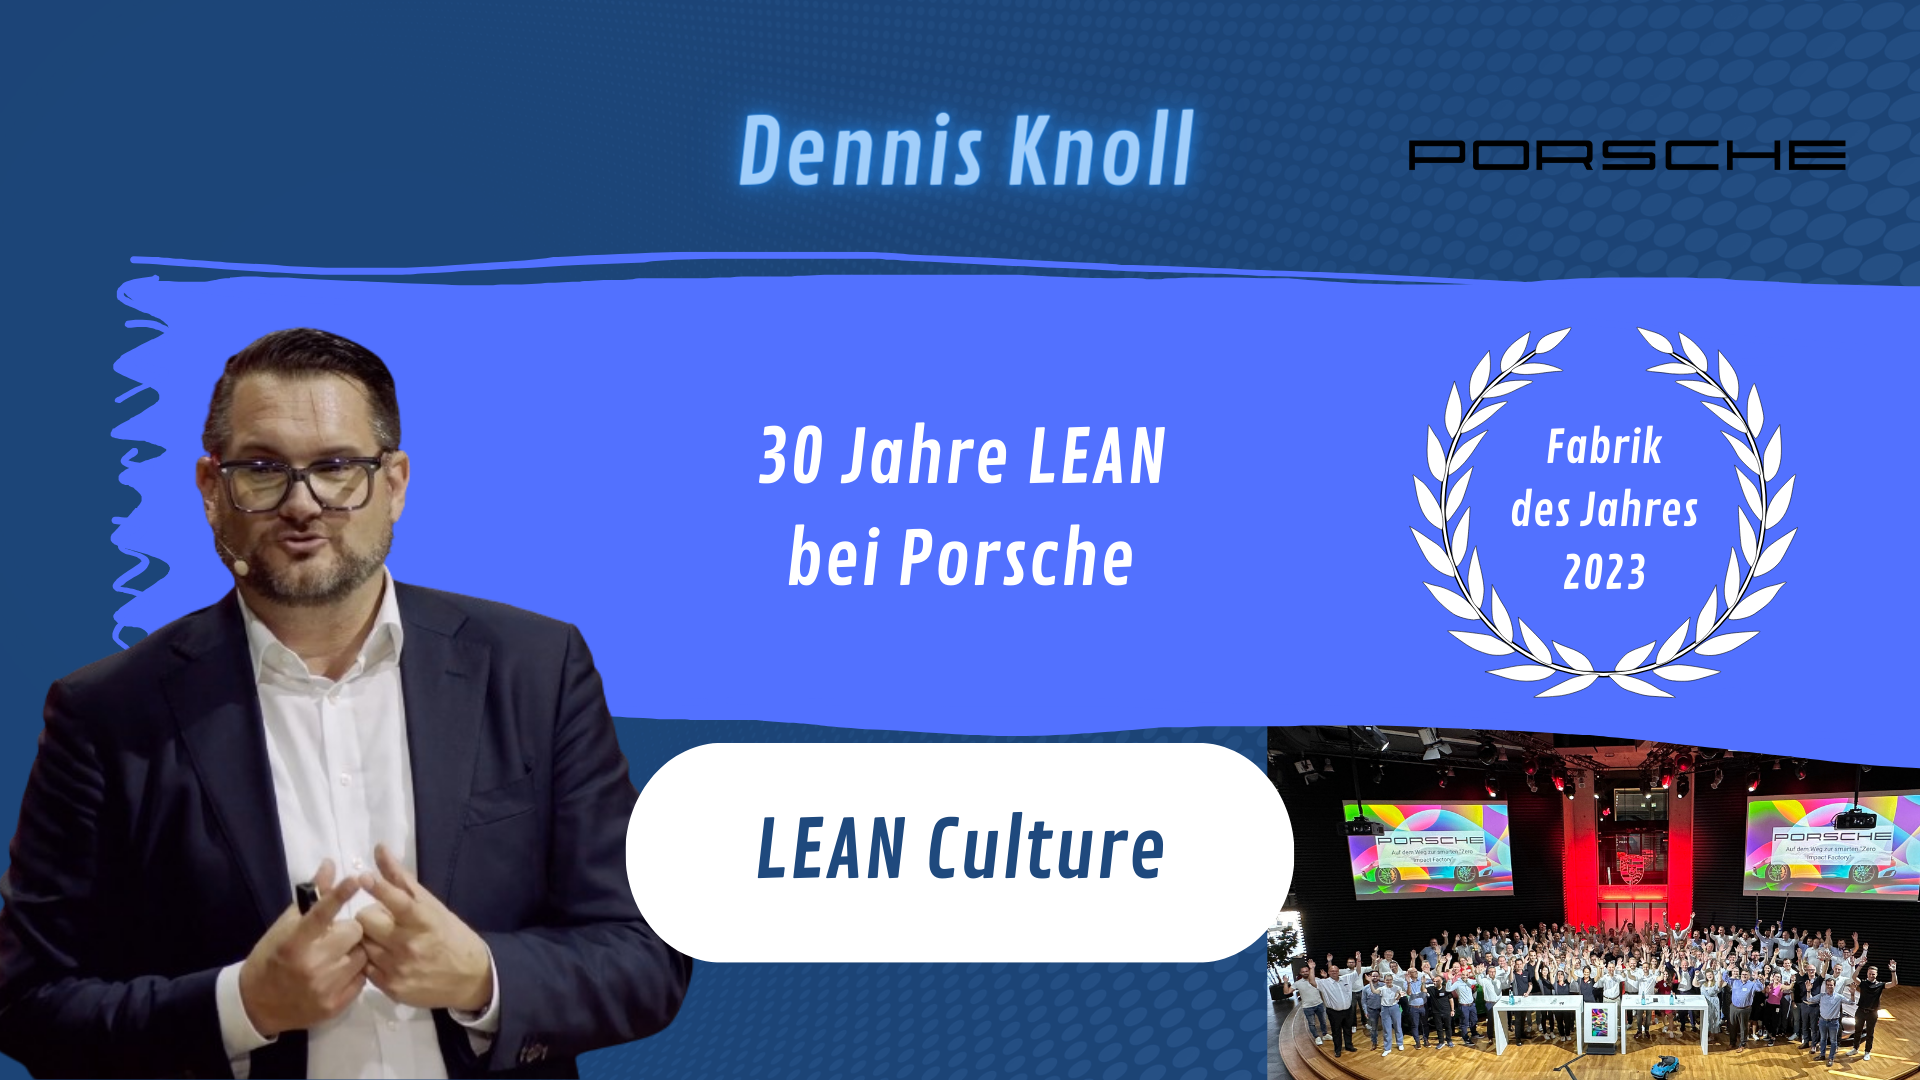 LEAN - LEAN Culture mit Dennis Knoll